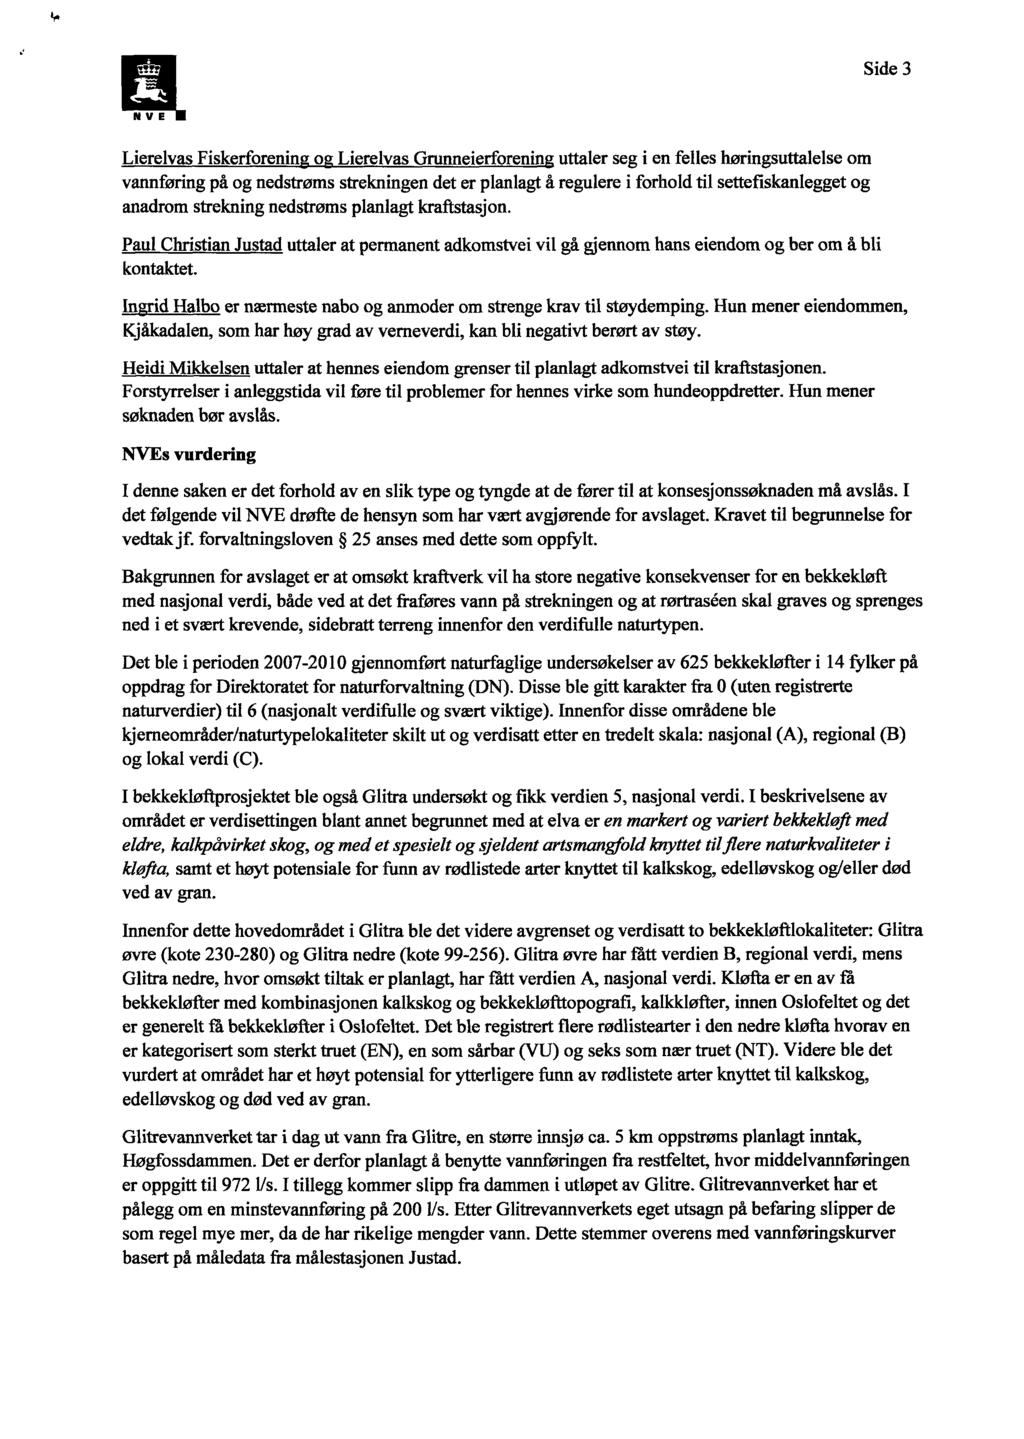 Side 3 N V E Lierelvas Fiskerforenin o Lierelvas Grunneierforenin uttaler seg i en felles høringsuttalelse om vannføring på og nedstrøms strekningen det er planlagt å regulere i forhold til